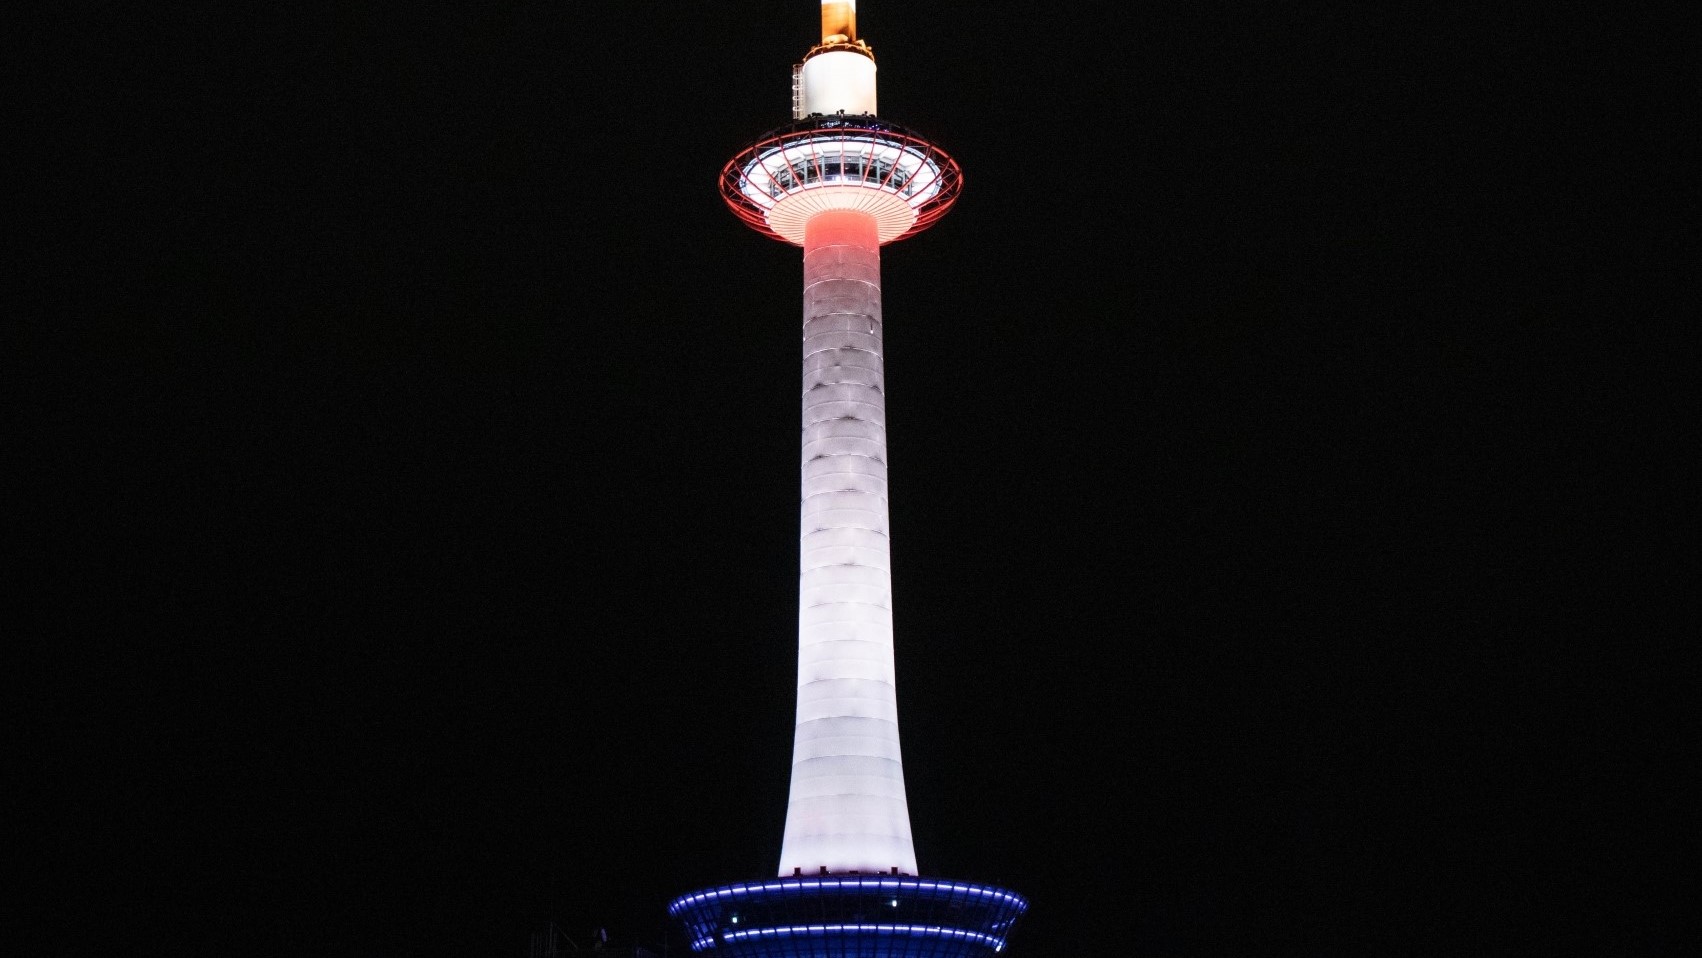 ■京都タワー■地上131mの京都のシンボル。京都の夜景や市街地を360度見渡せる展望室があります。